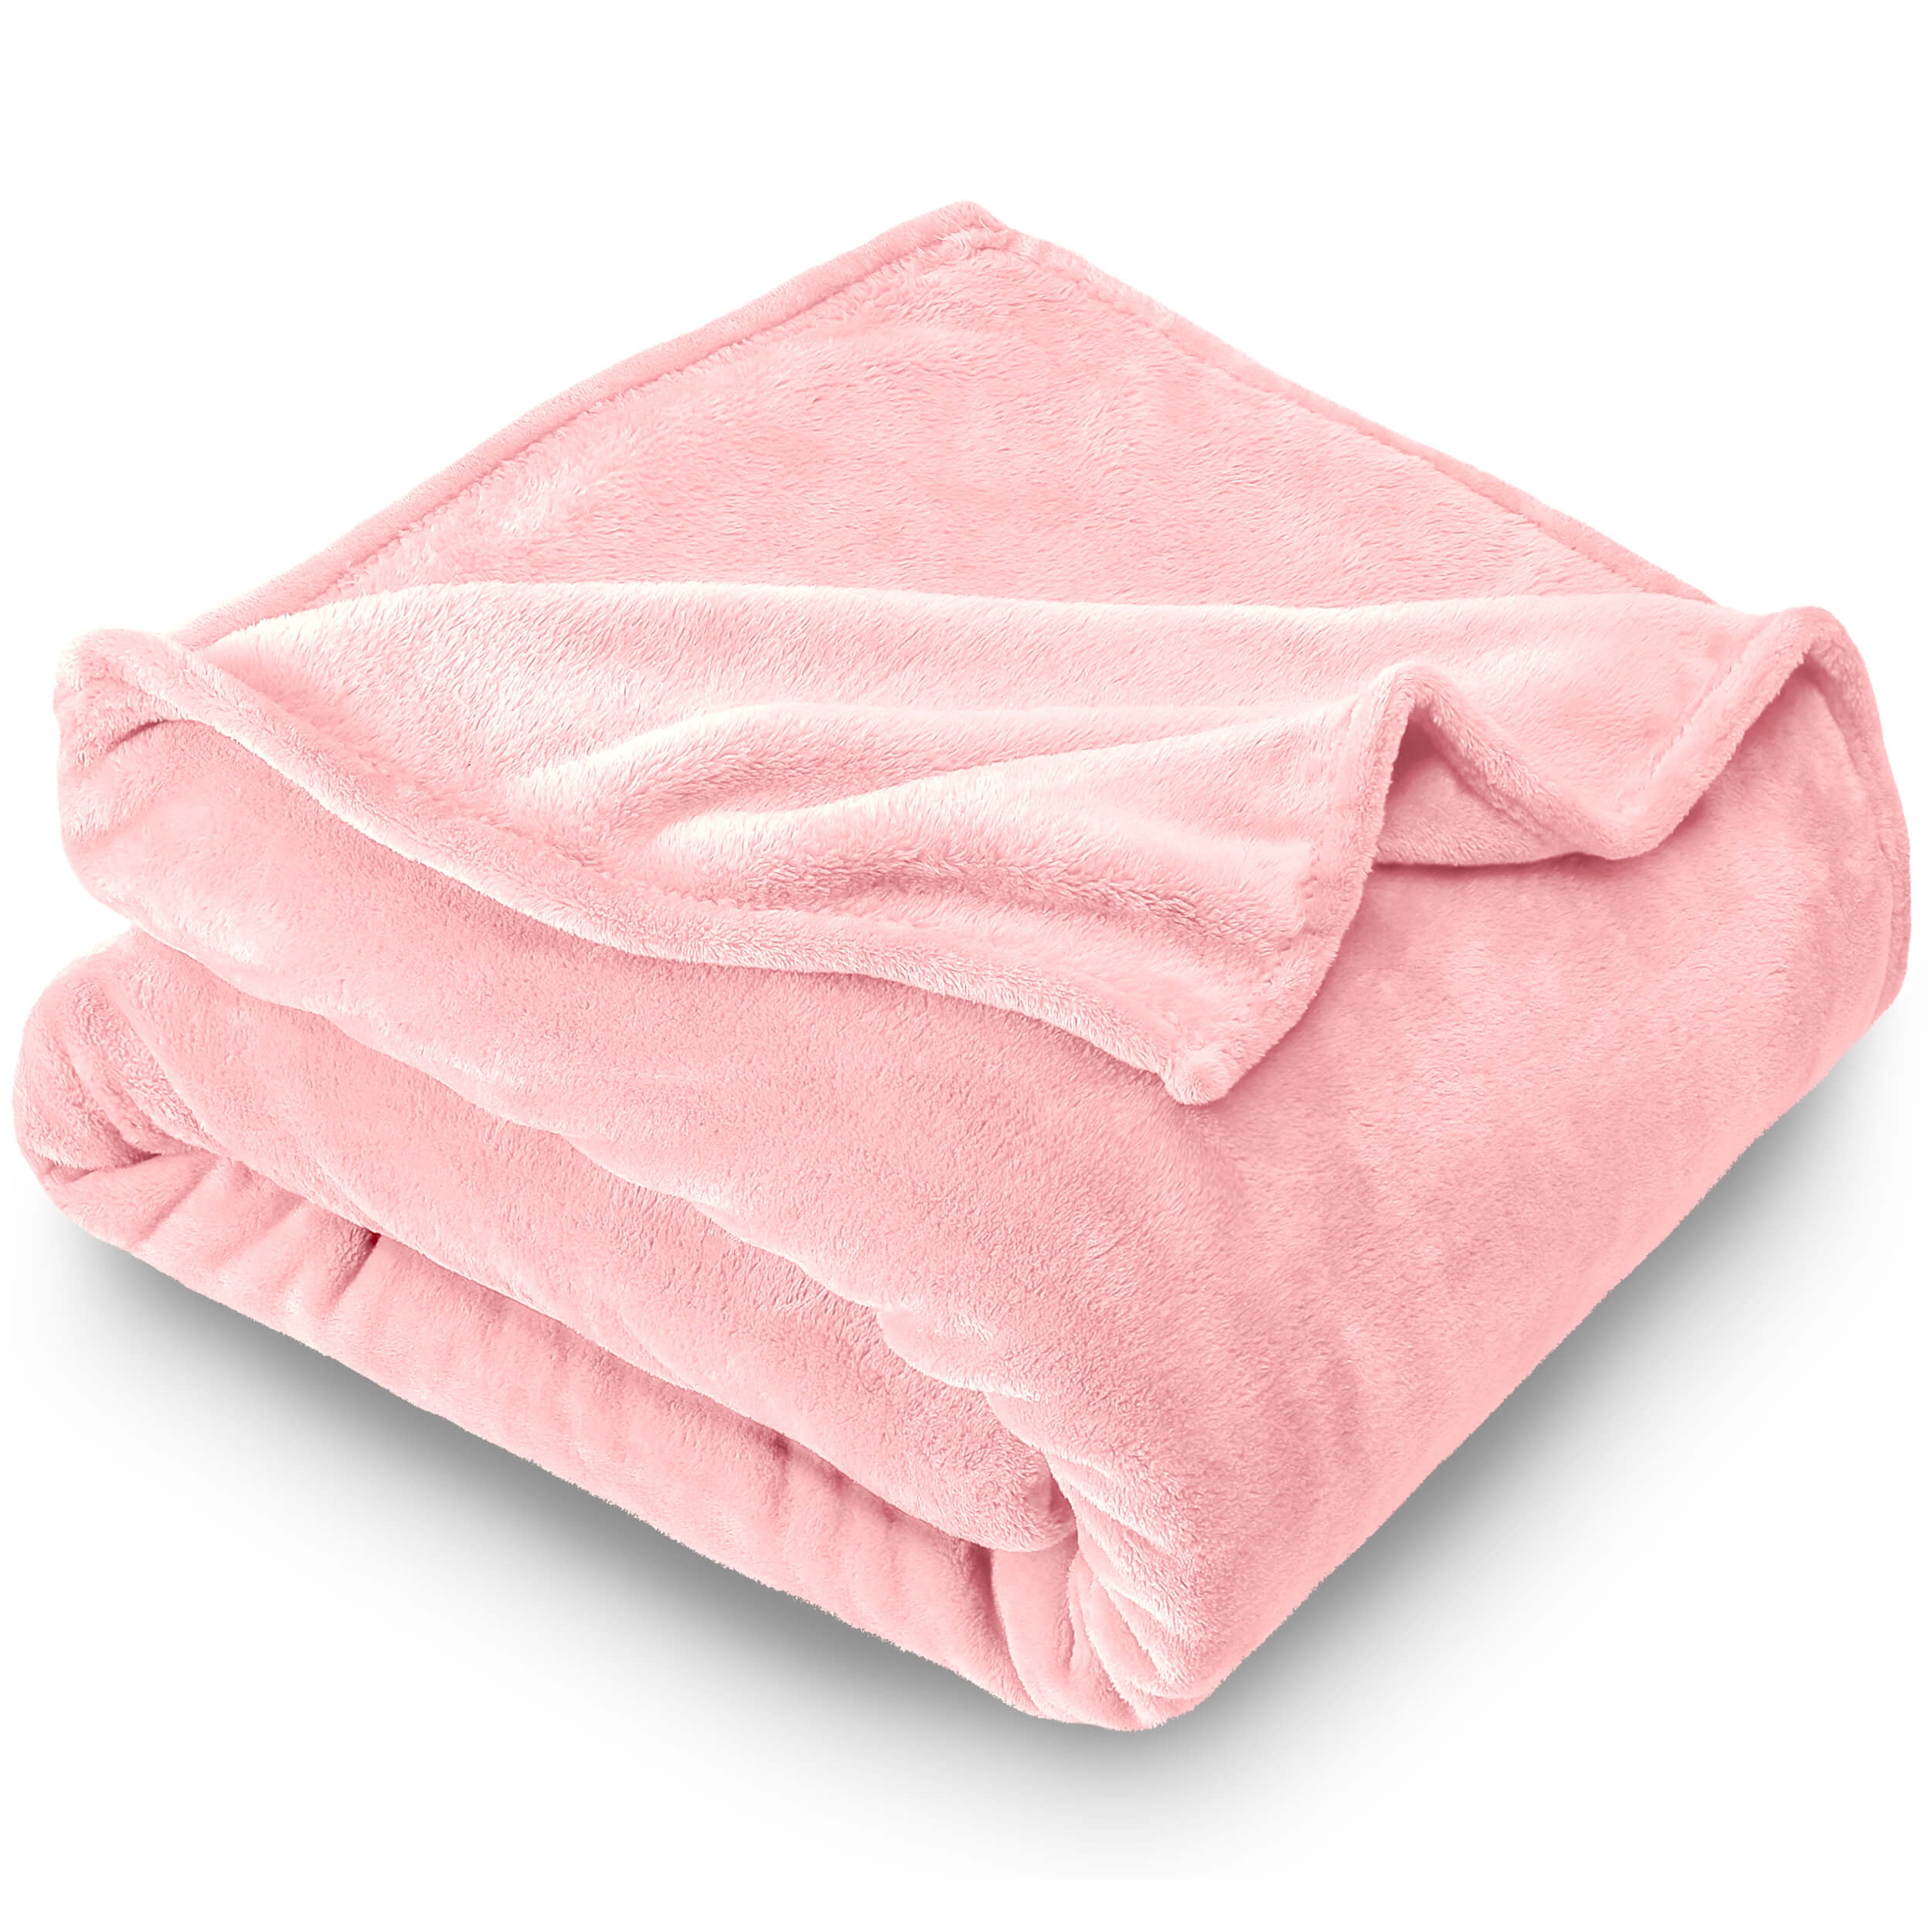 Bare Home Ultra Soft Microplush Velvet Blanket Luxurious Fuzzy Fleece Fur All Season Premium Bed Blanket